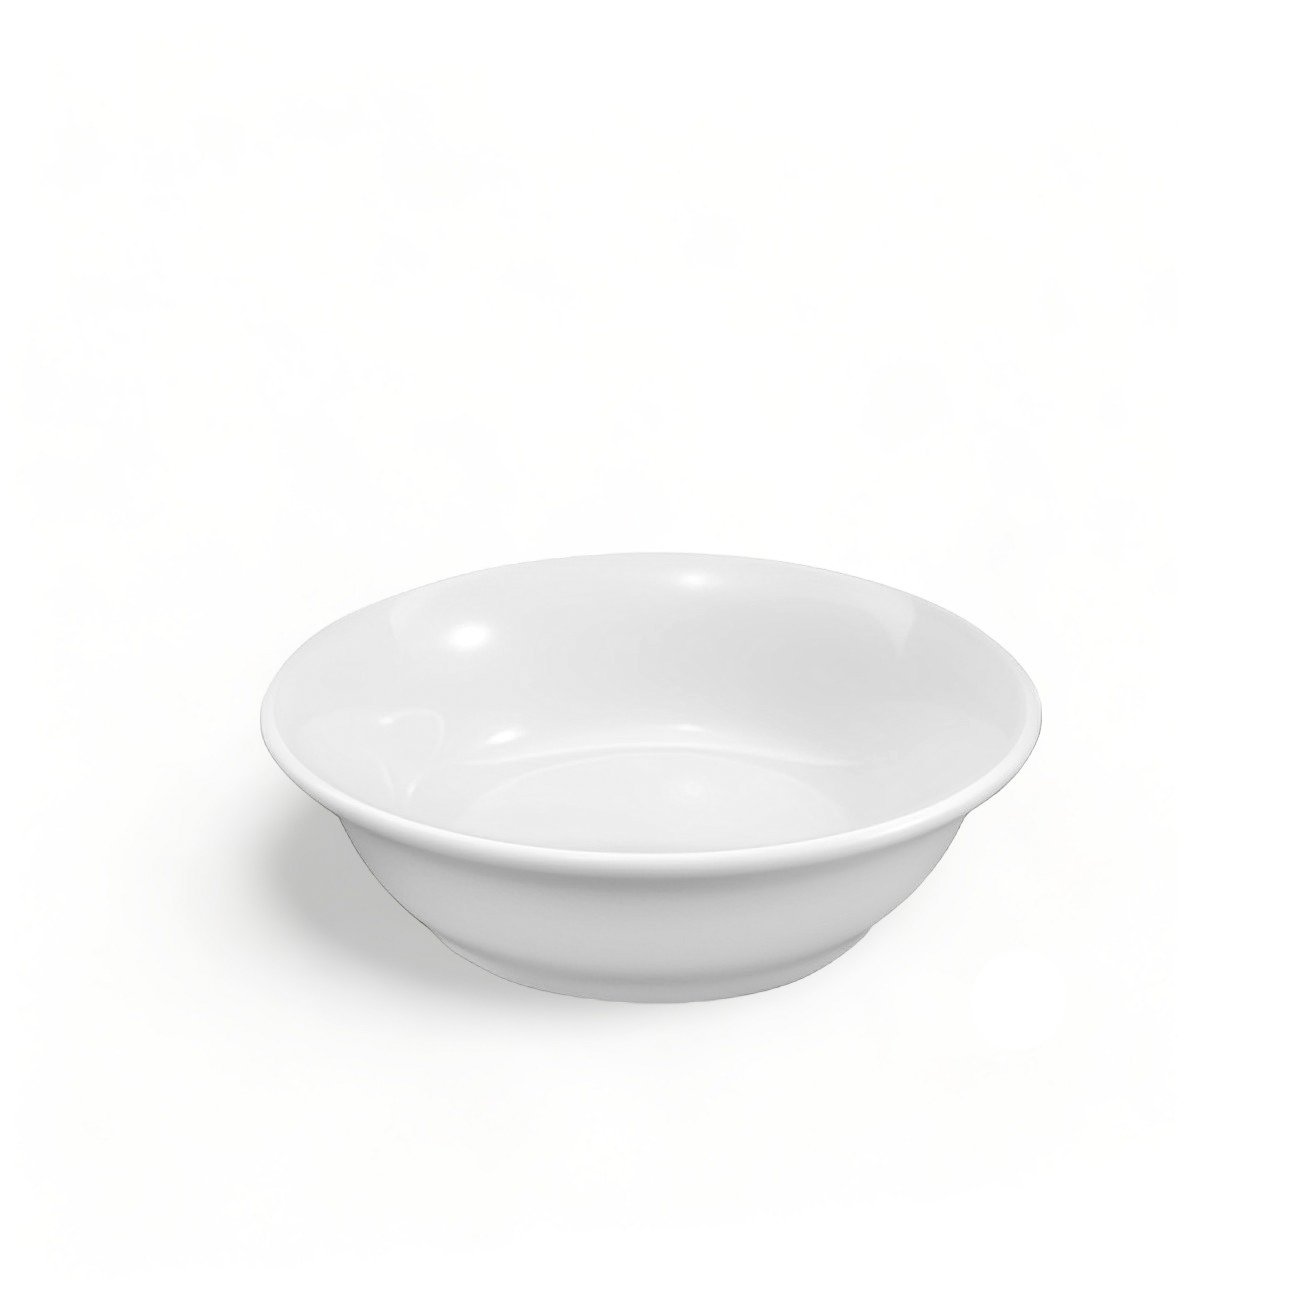 2 Tigela de Porcelana Premium Cumbuca Pote Bowl 350ml